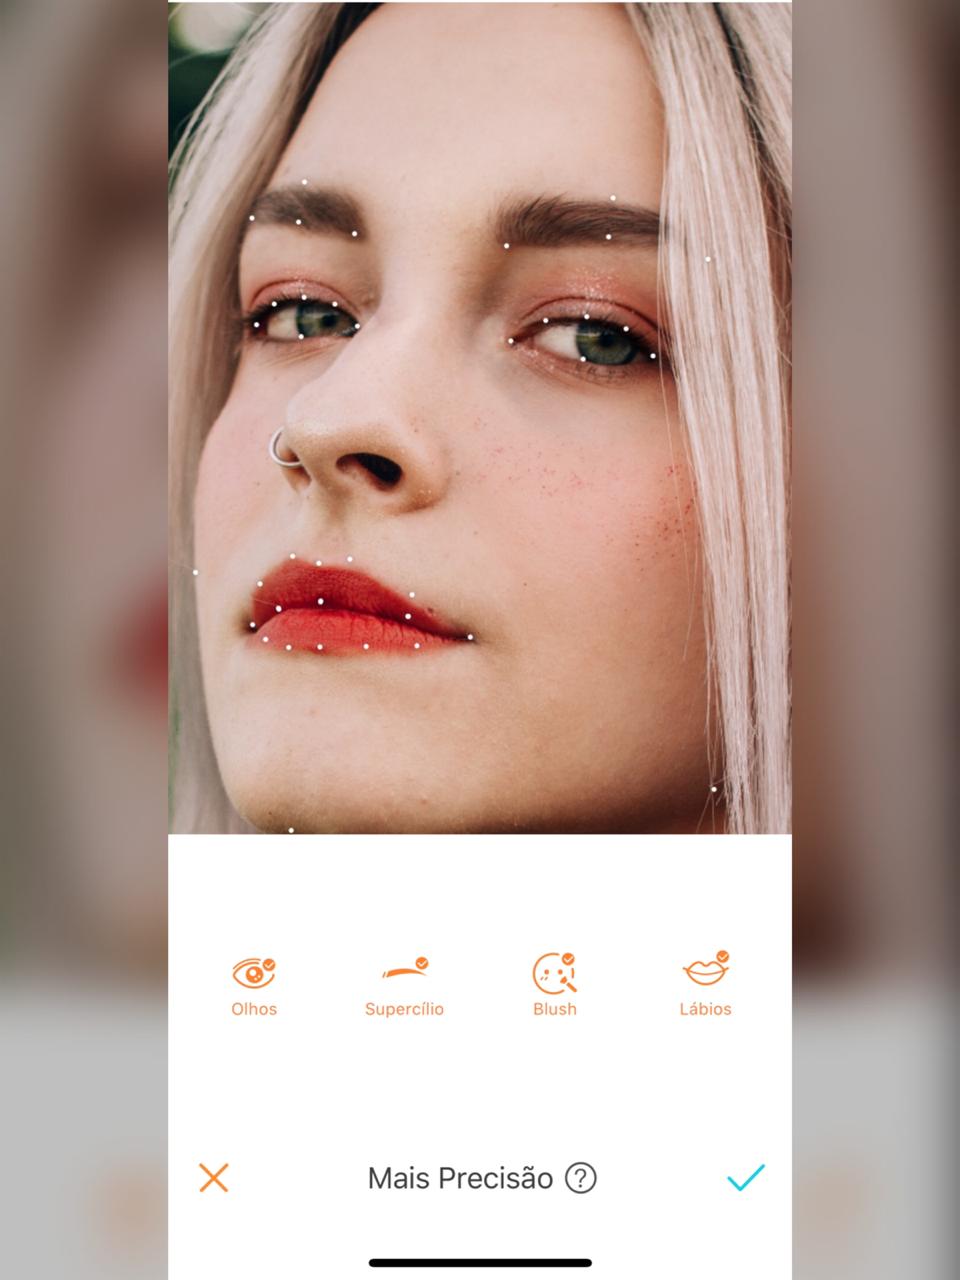 Tutorial de edição mostrando a precisão de edição do AirBrush focando nos detalhes do rosto da mulher da foto